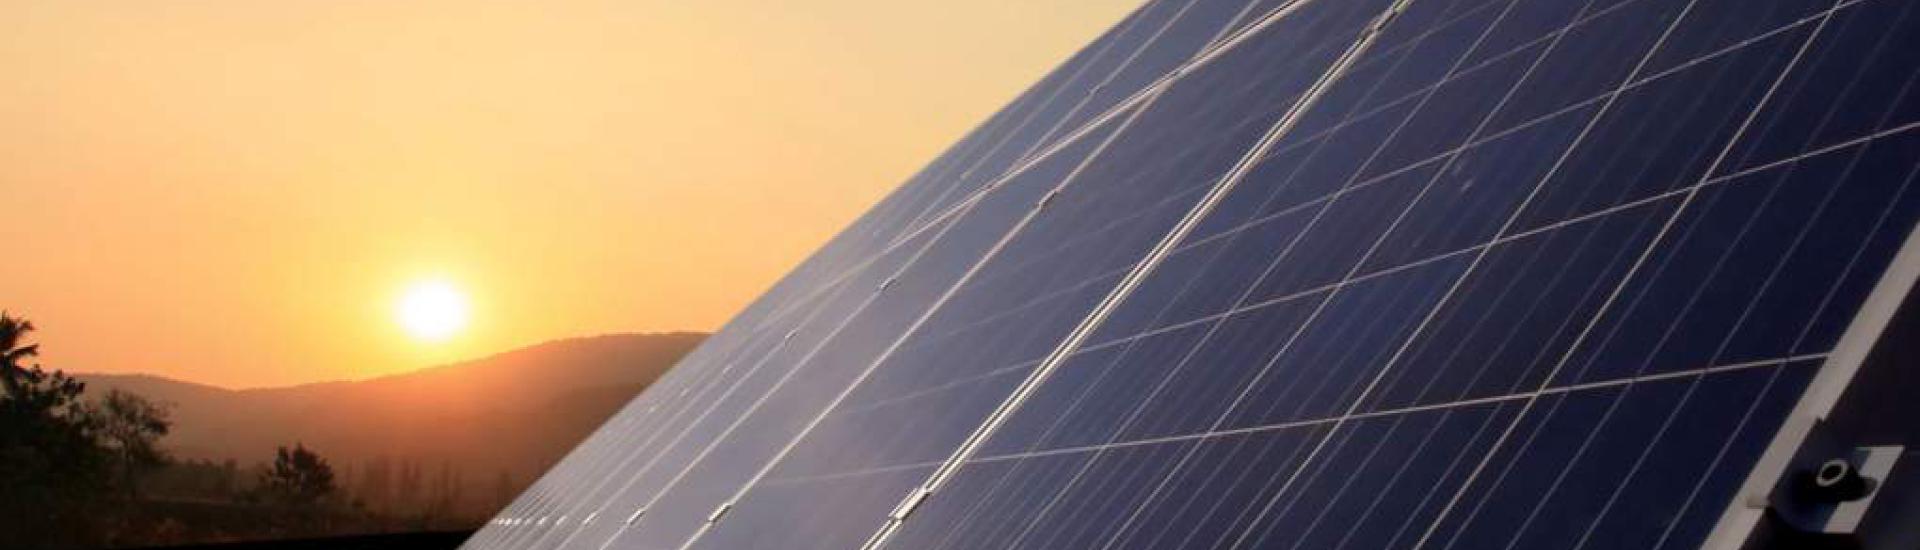 Vorrang für Erneuerbare Energien - EEG 2023 Änderungen vorrangig im Bereich Photovoltaik